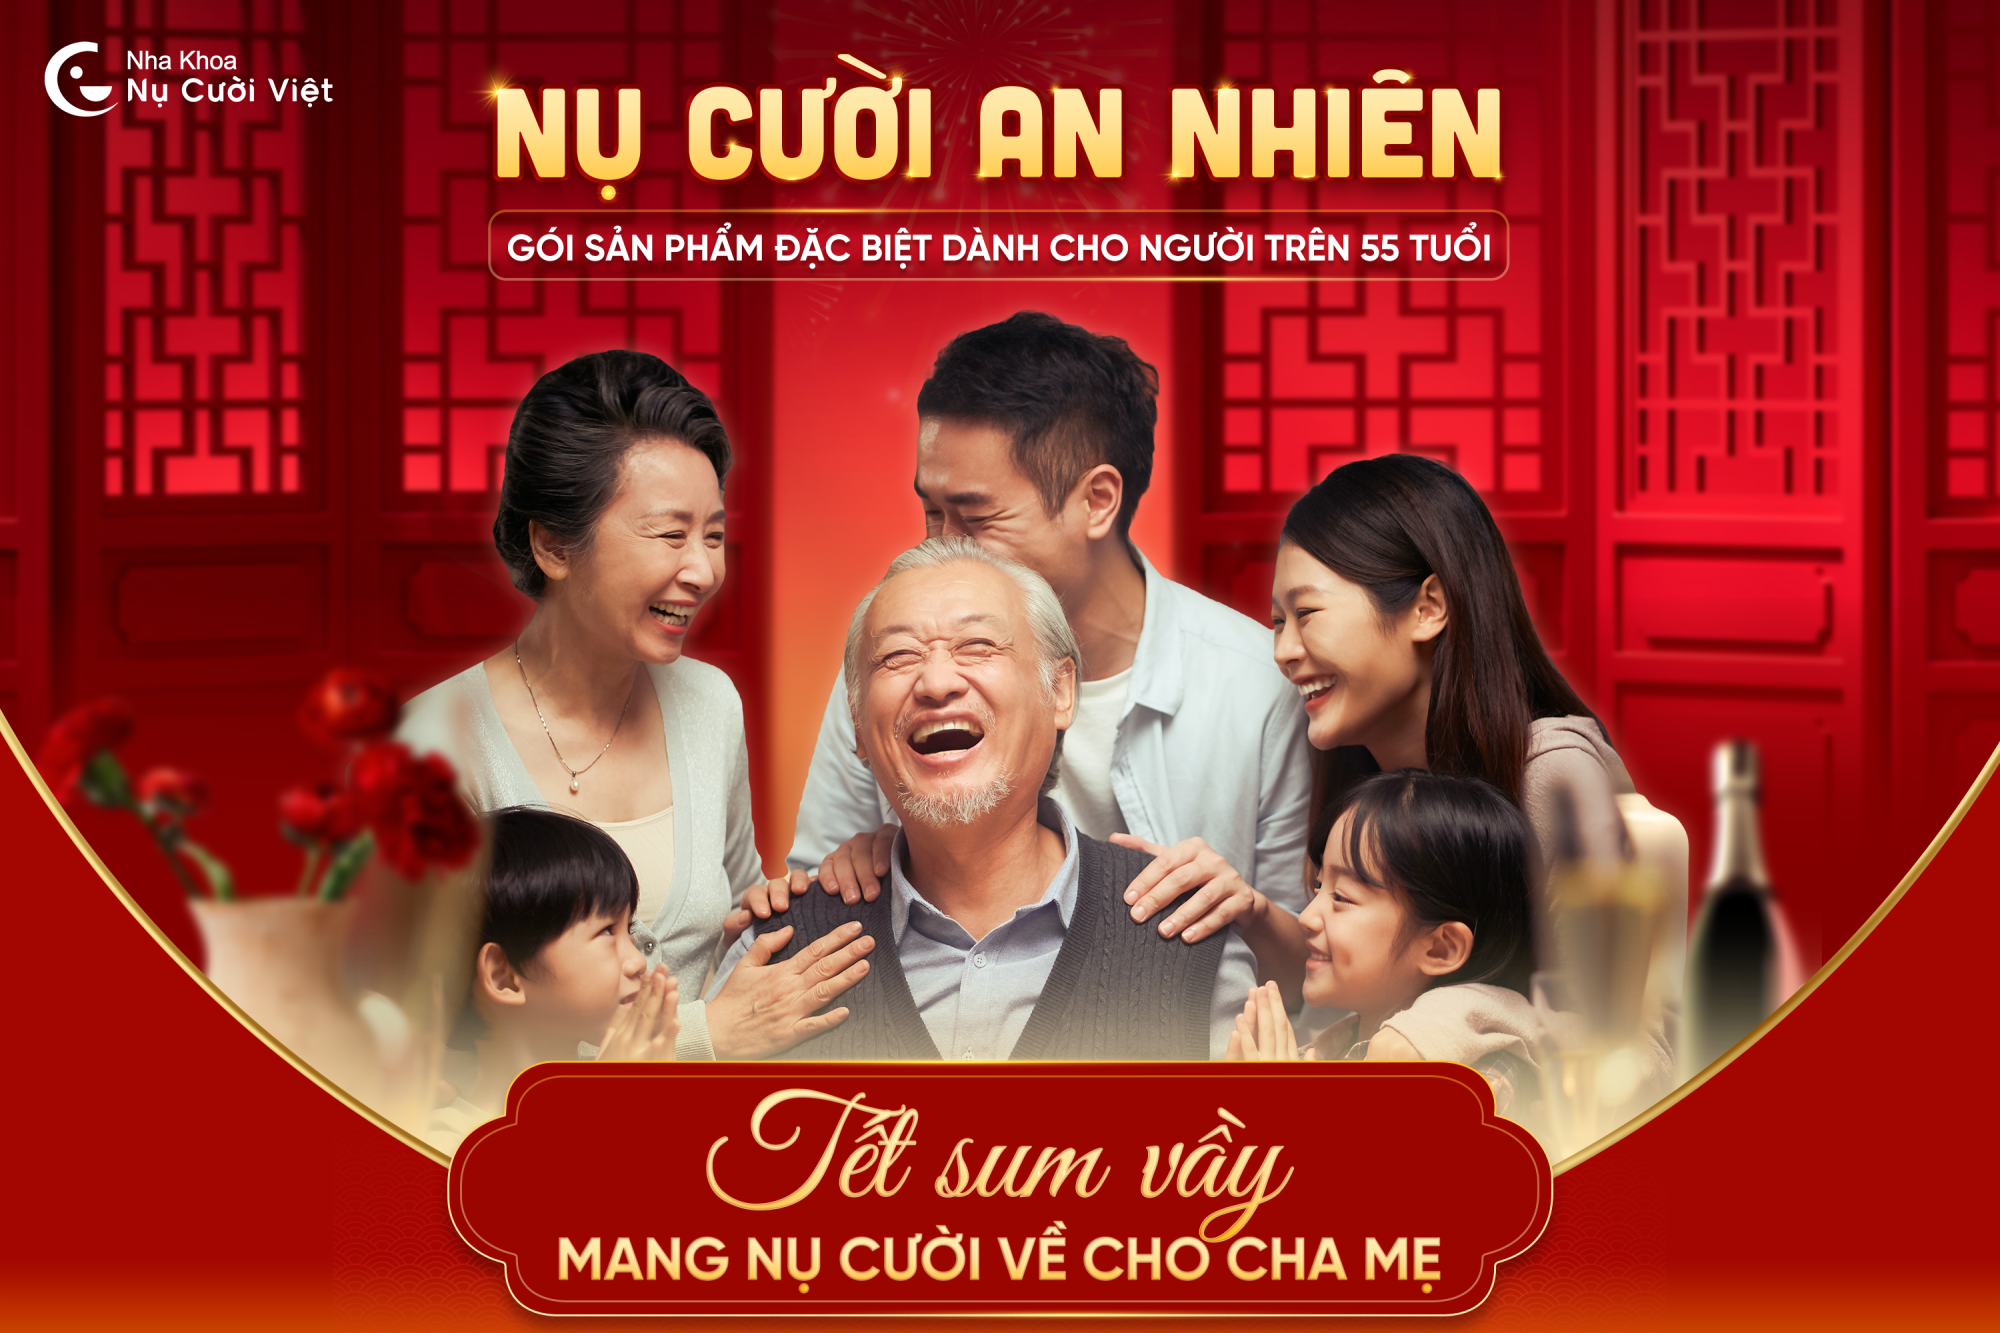 Nụ Cười Việt - NỤ CƯỜI AN NHIÊN - TẾT SUM VẦY, MANG NỤ CƯỜI VỀ CHO CHA MẸ 